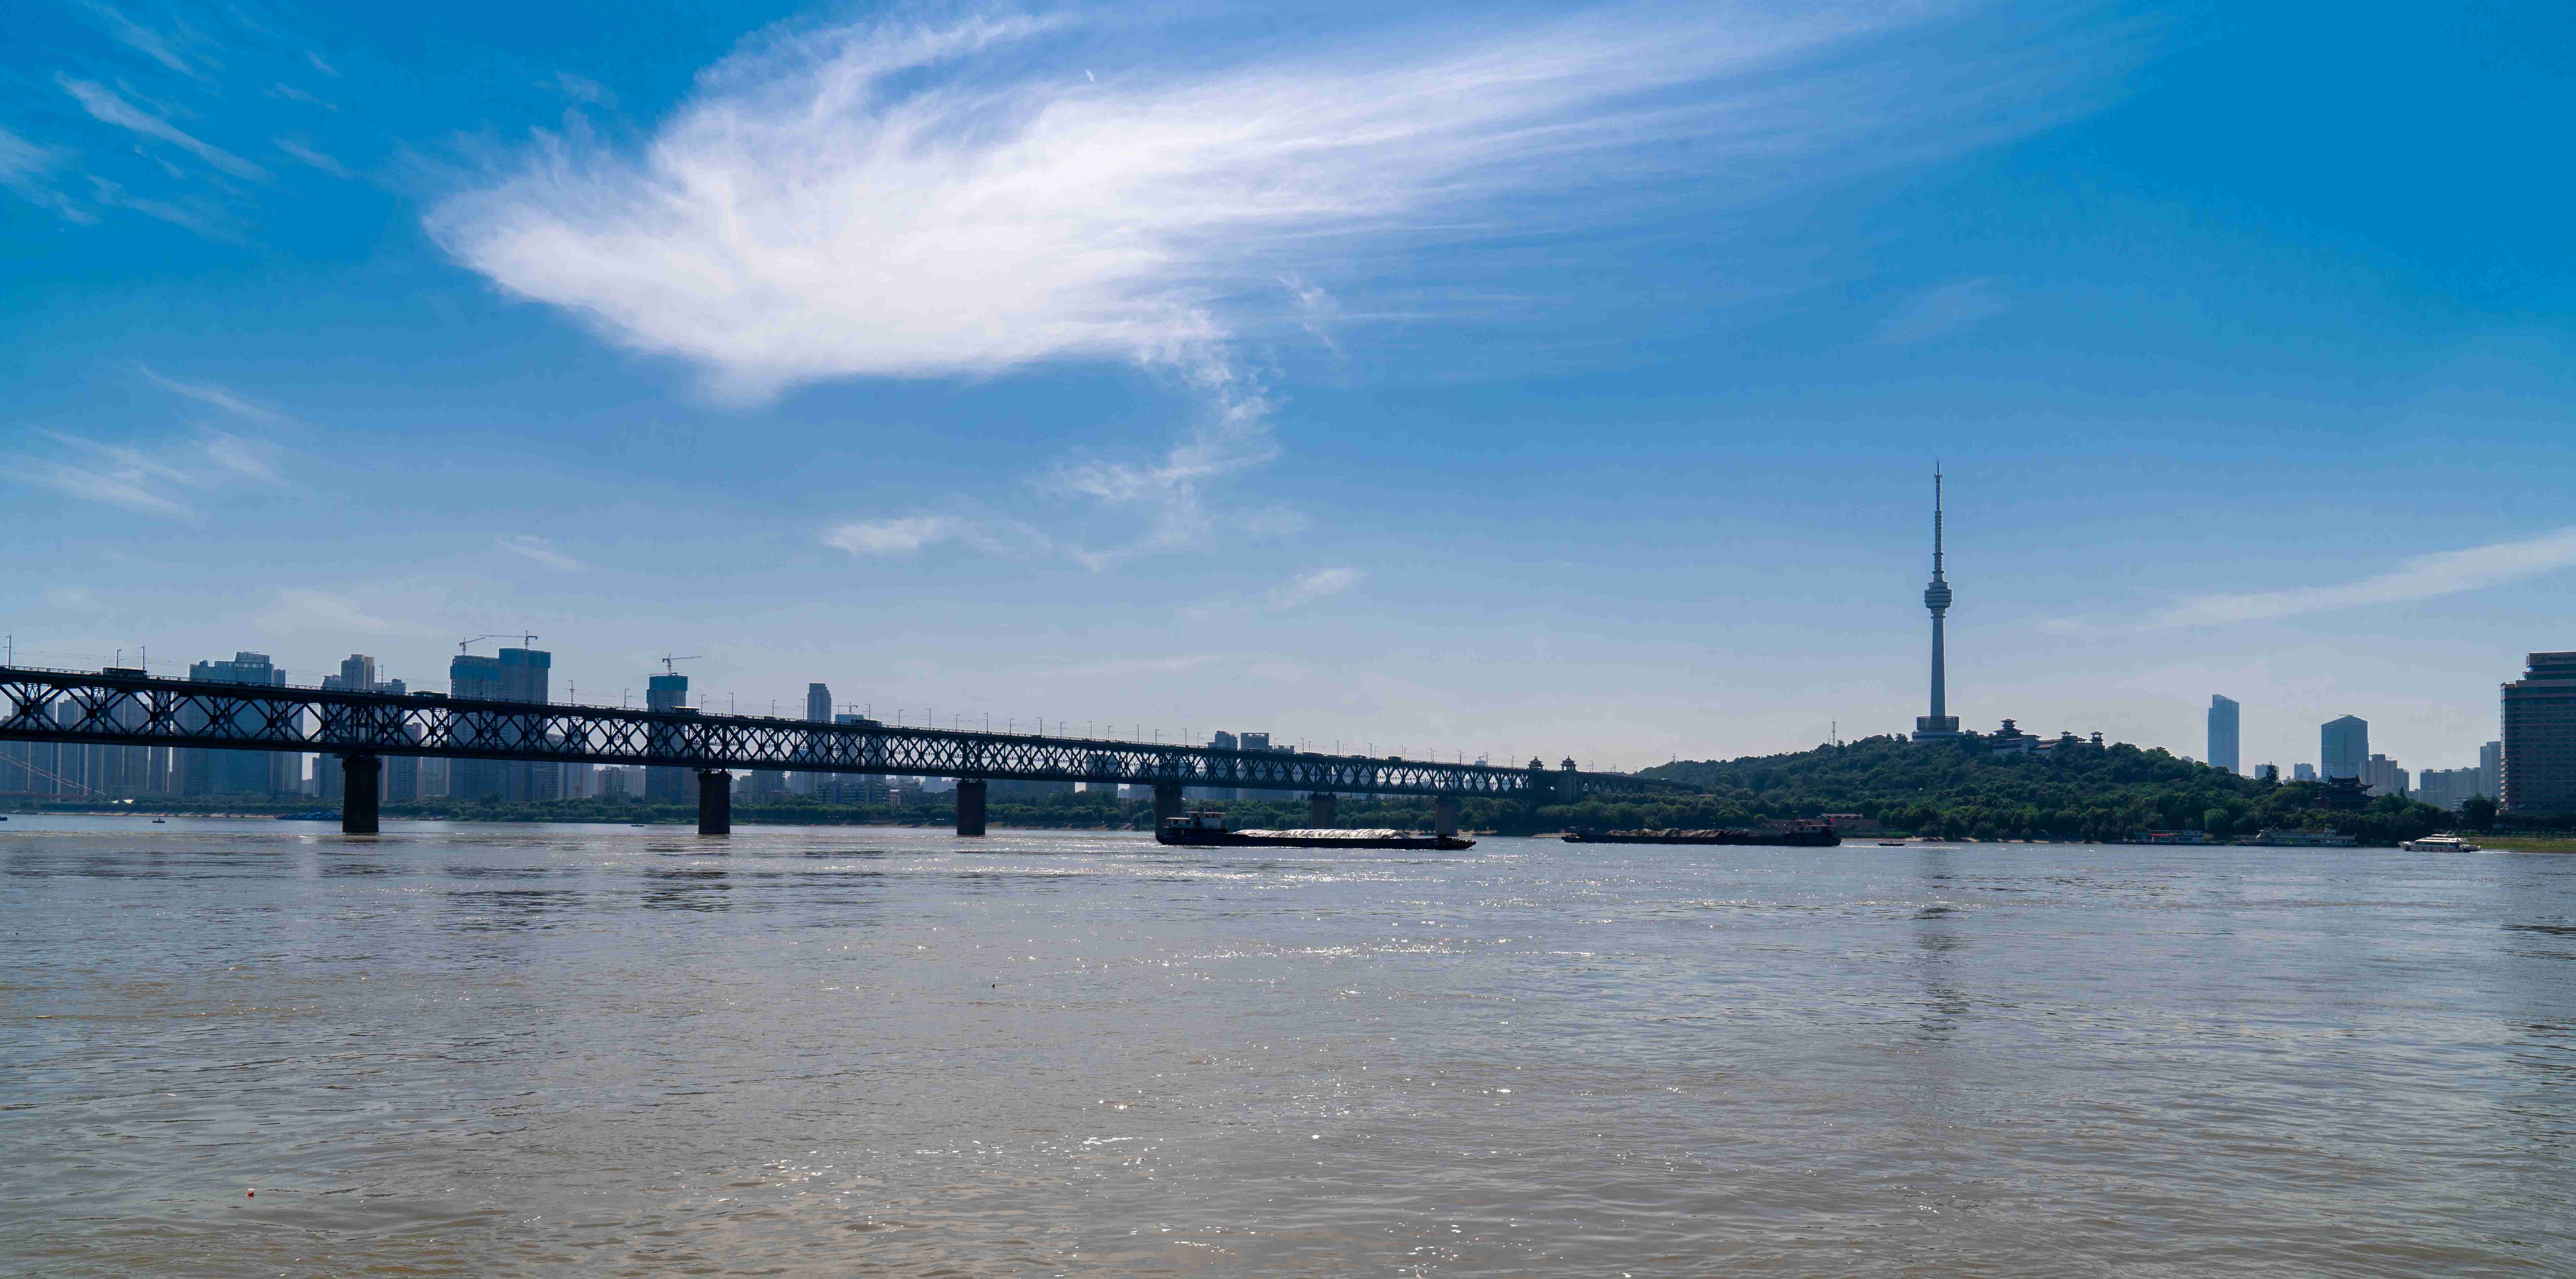 Jembatan Sungai Yangtse. Kota Wuhan yang berada di tepi Sungai Yangtse menjadi tempat munculnya coronavirus jenis baru pertama kali. (Foto:unsplash)